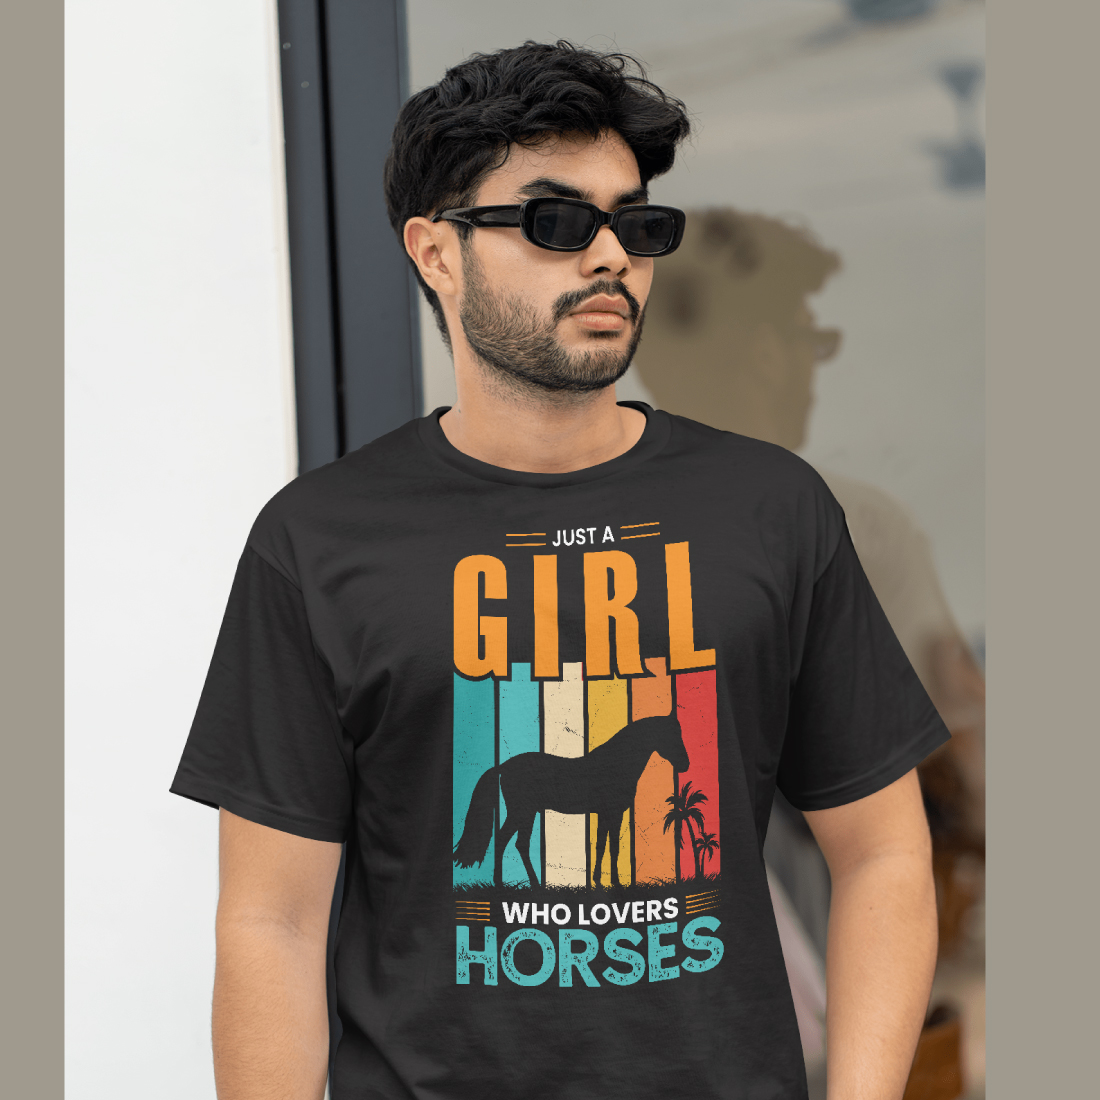 10 Print Ready HORSES t-shirt design bundle preview image.